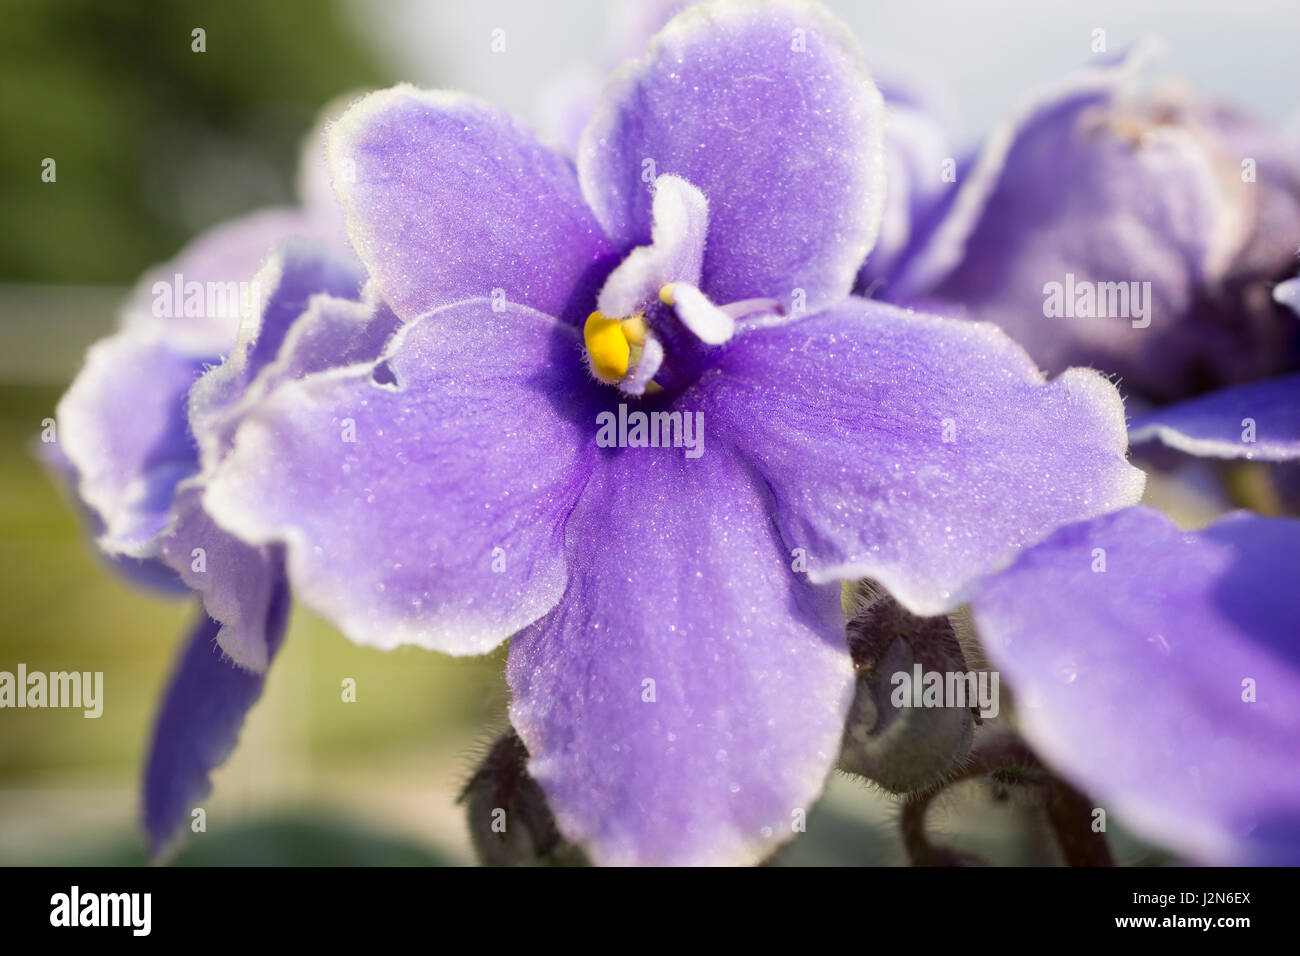 Plan macro sur une fleur violette avec pistil jaune Photo Stock - Alamy